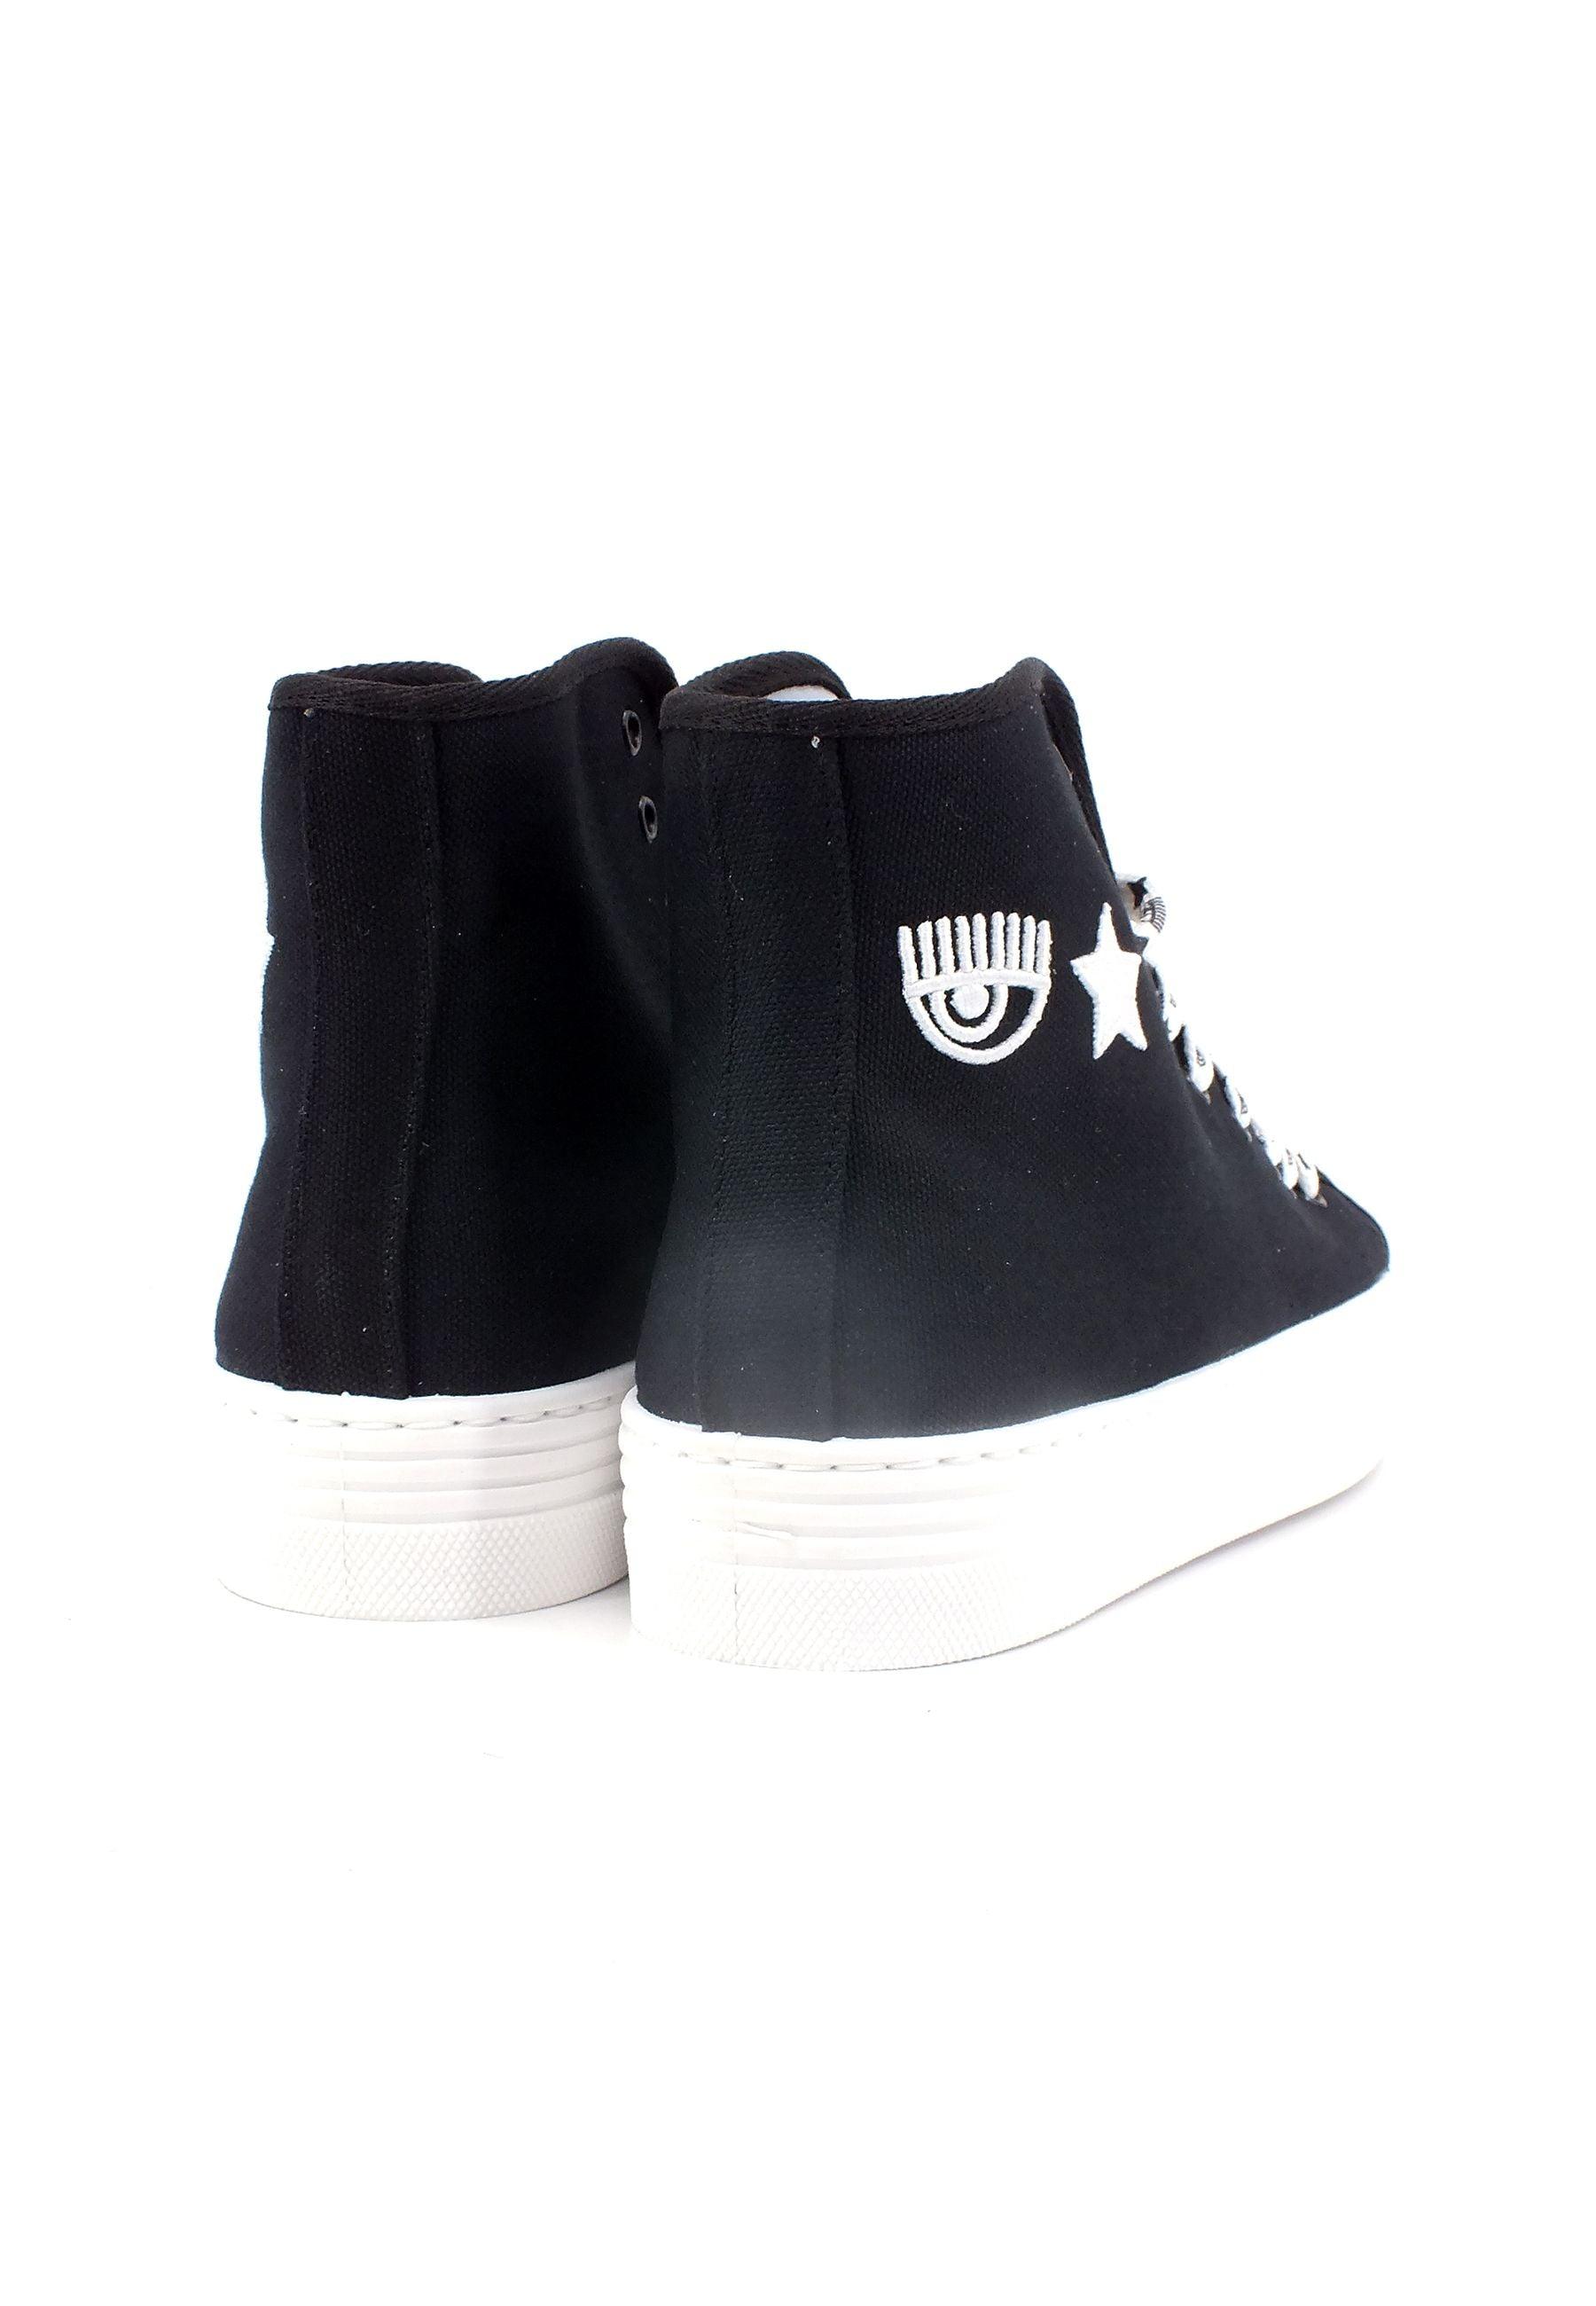 CHIARA FERRAGNI Sneaker High Donna Black CF3122-001 - Sandrini Calzature e Abbigliamento